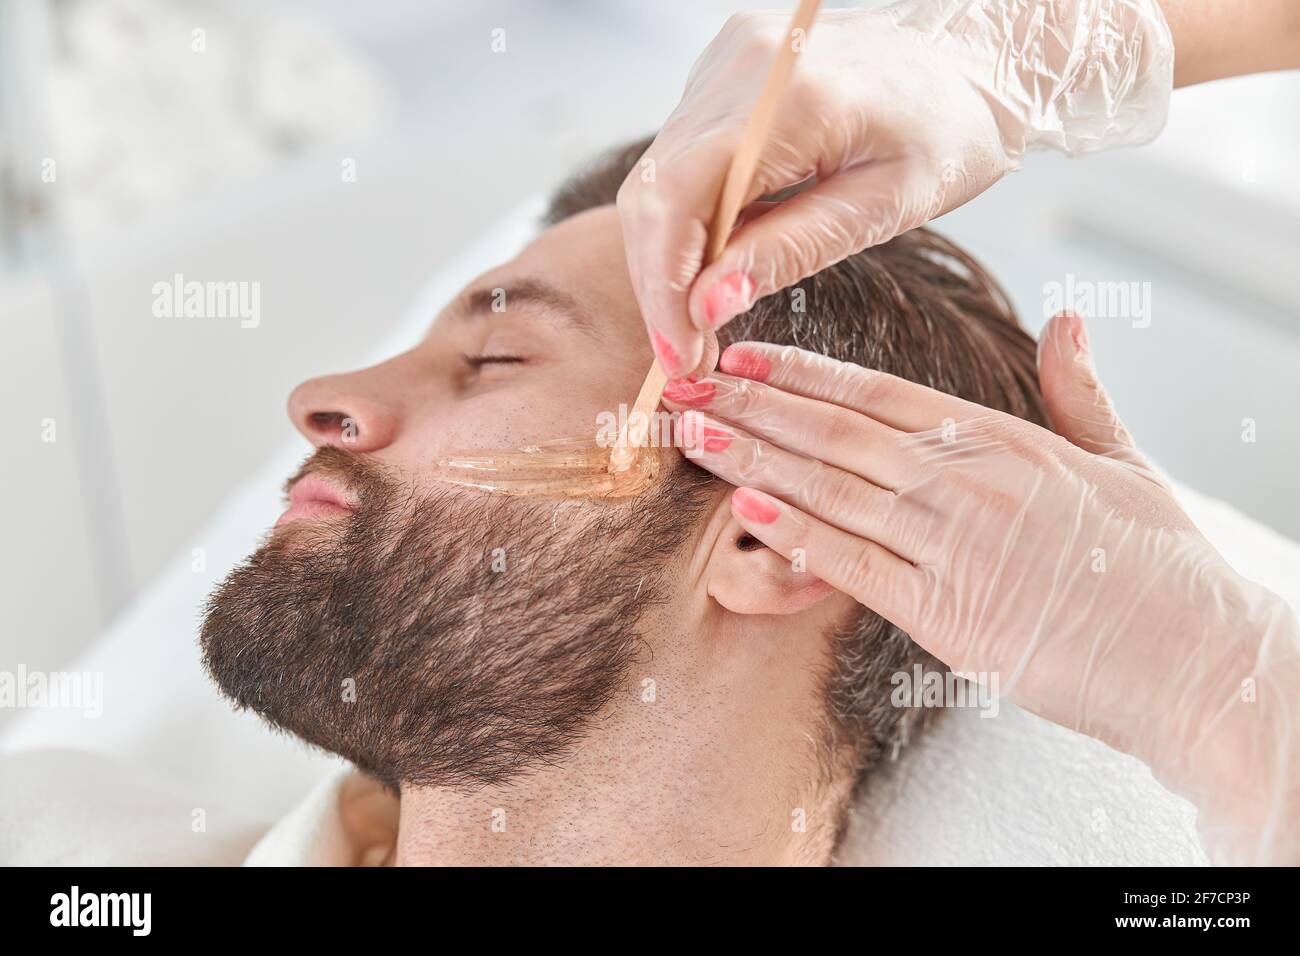 Concept de la cosmétologie et du visage. Une esthéticienne réalise des  modèles de visage et de barbe pour une épilation à la cire par un homme.  Épilation à la cire Photo Stock -